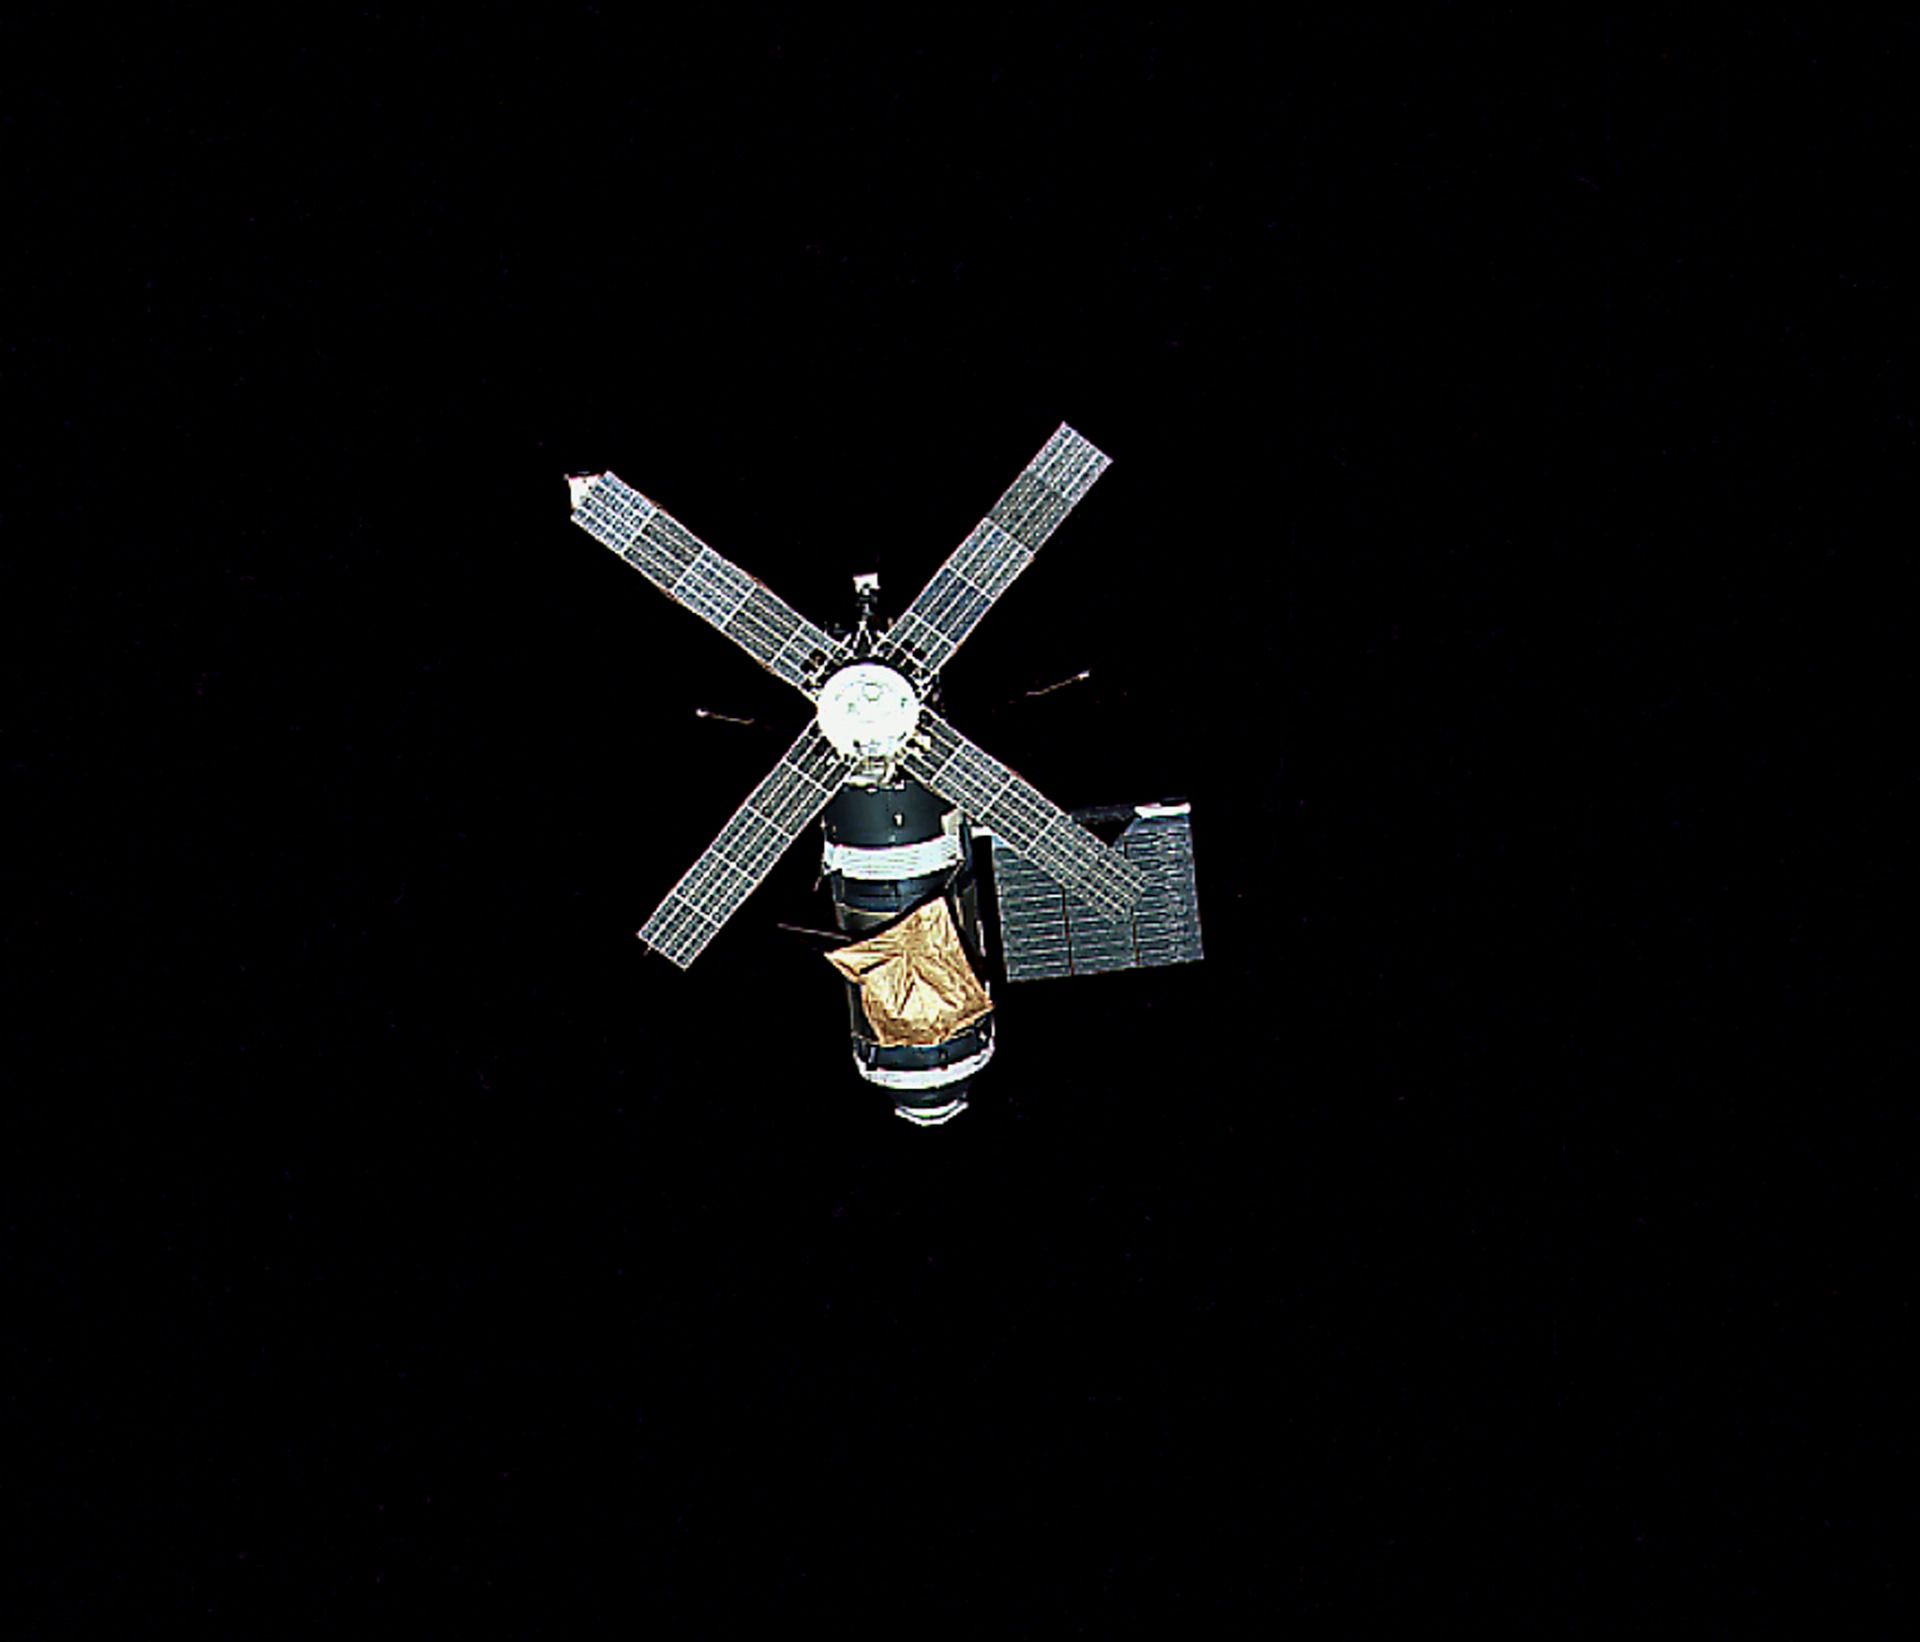 Skylab in low-earth orbit